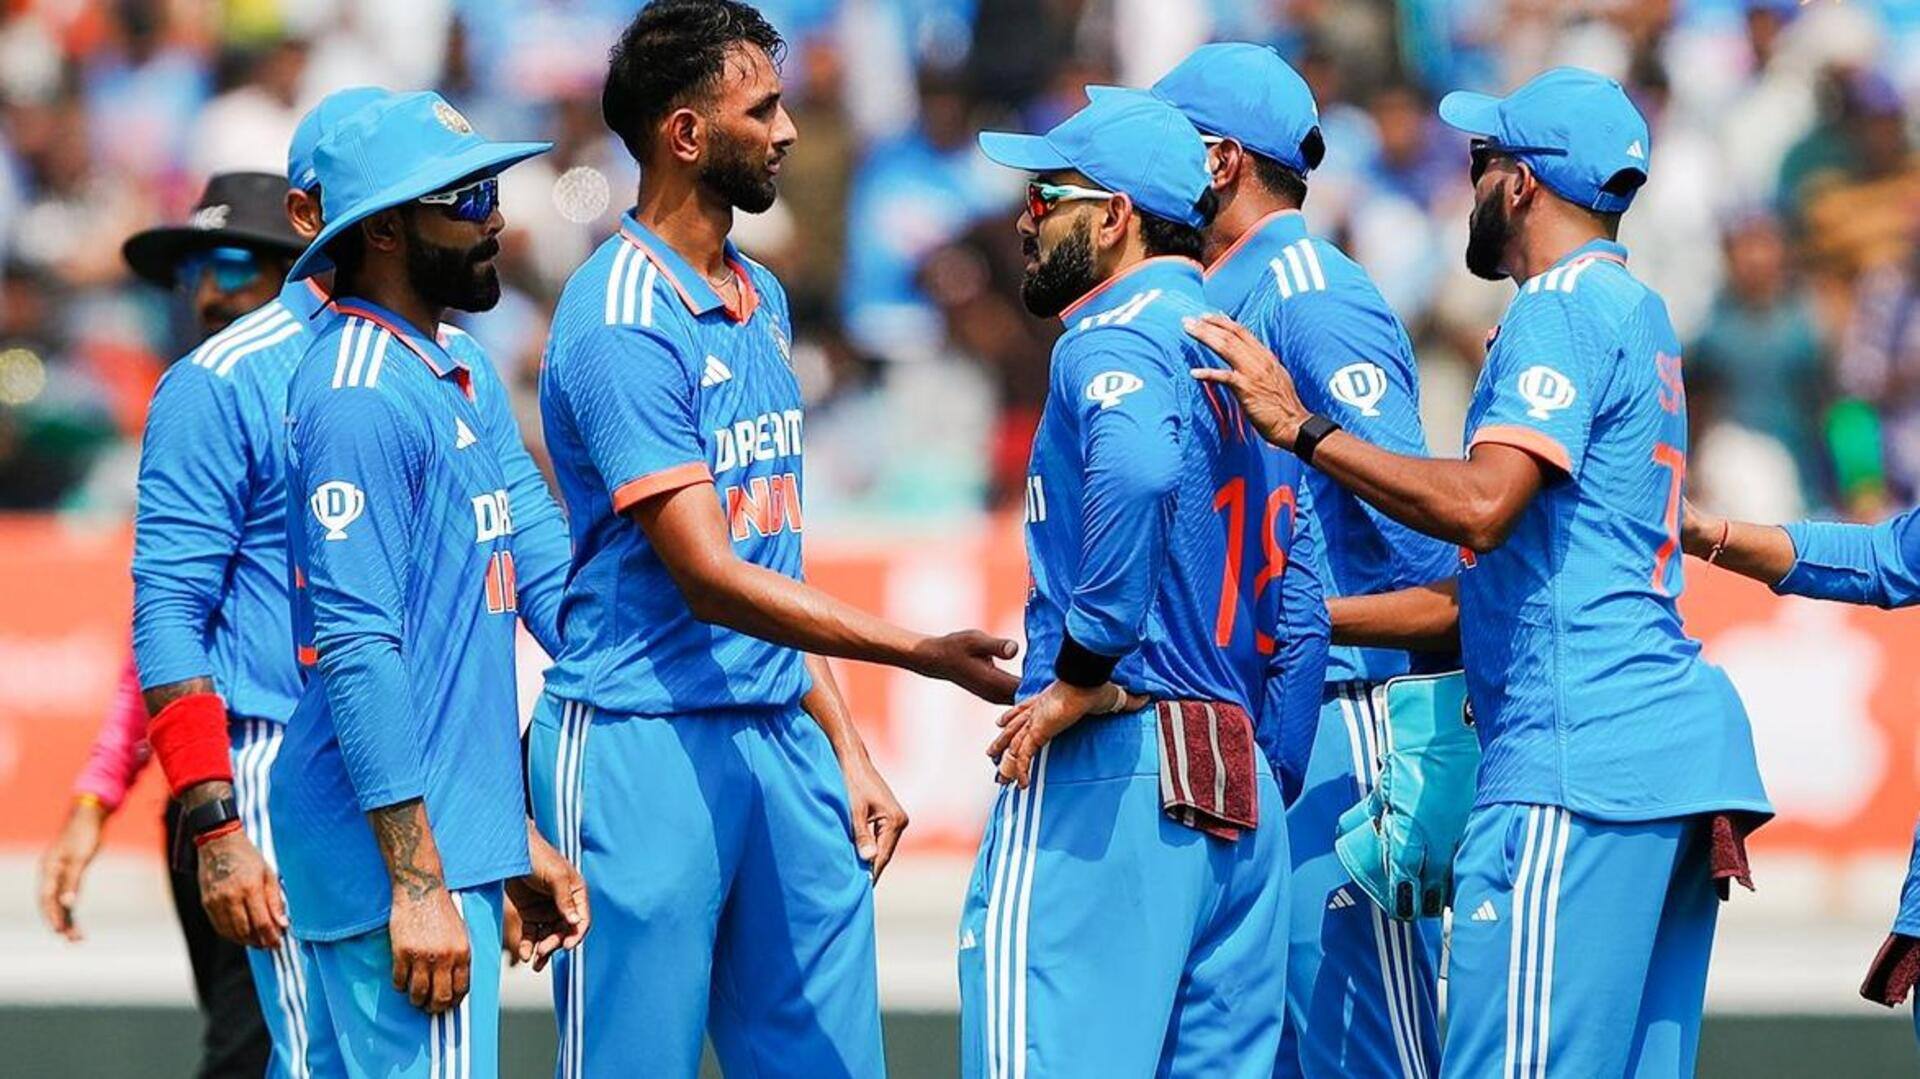 वनडे विश्व कप में भारतीय क्रिकेट टीम का दक्षिण अफ्रीका के खिलाफ कैसा रहा है प्रदर्शन? 